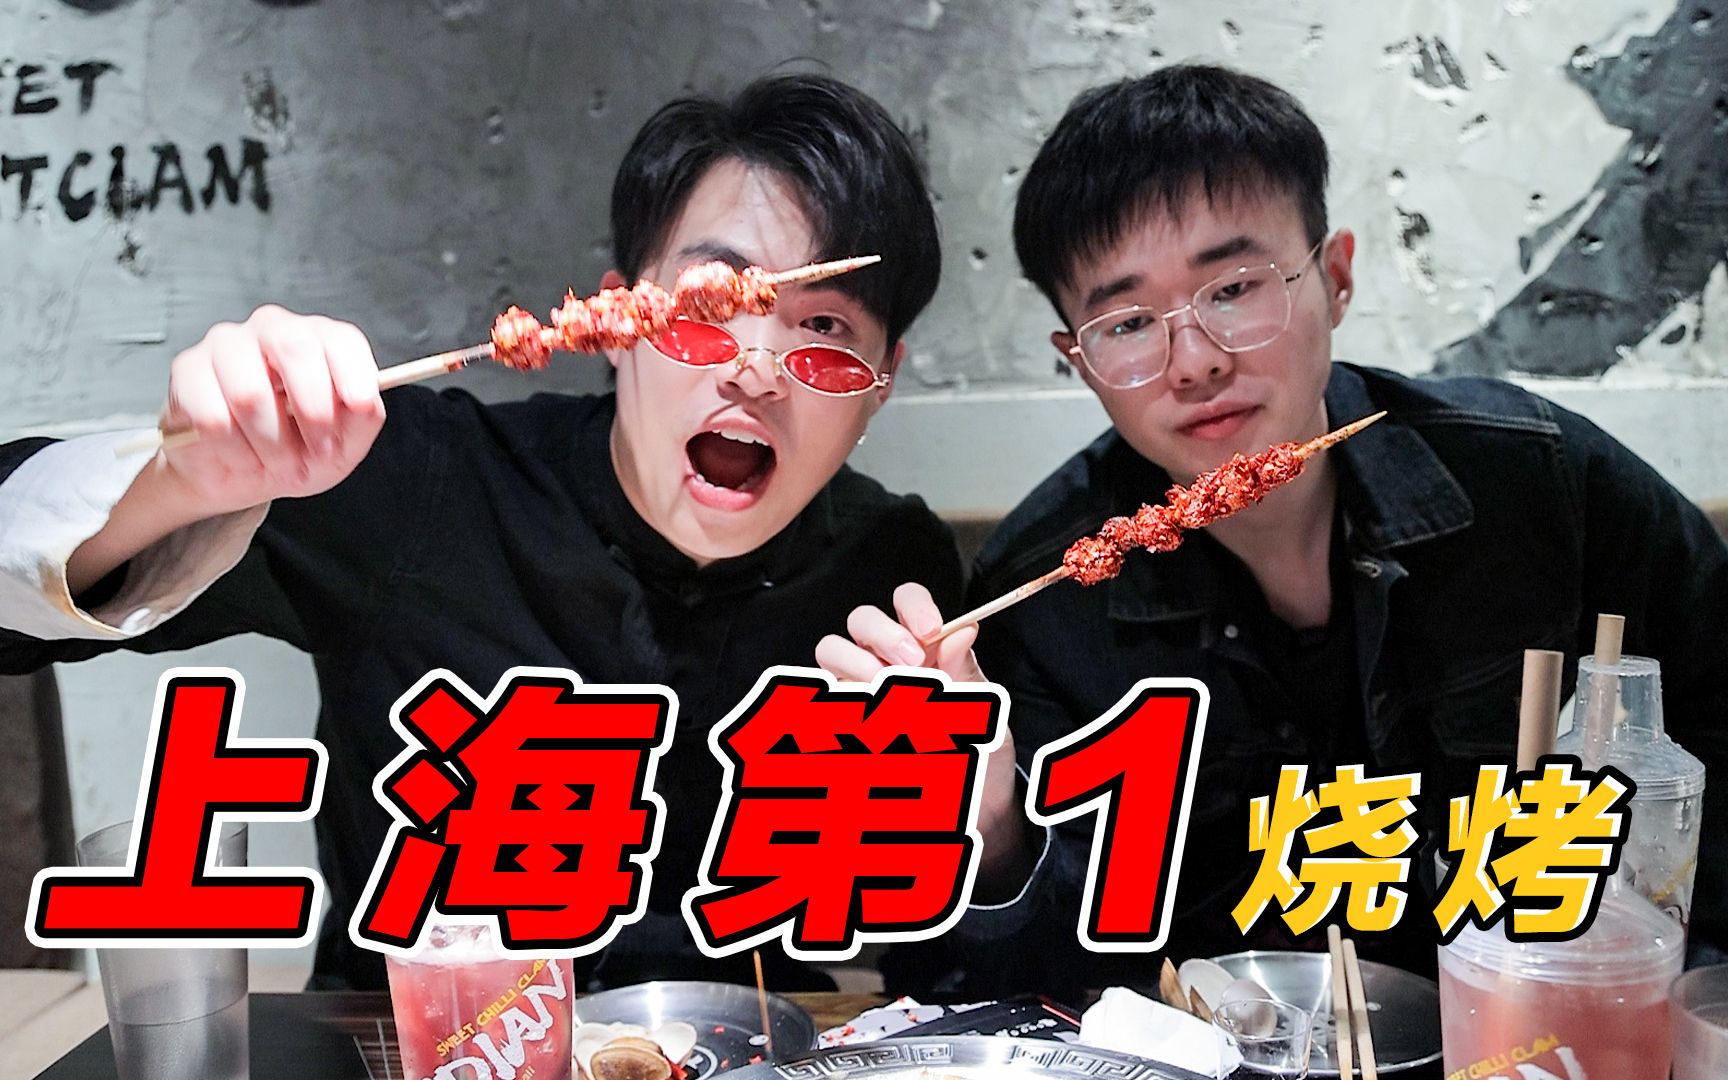 上海最破的烧烤店三个月就横扫魔都烧烤榜第一？但价格一点都不破！